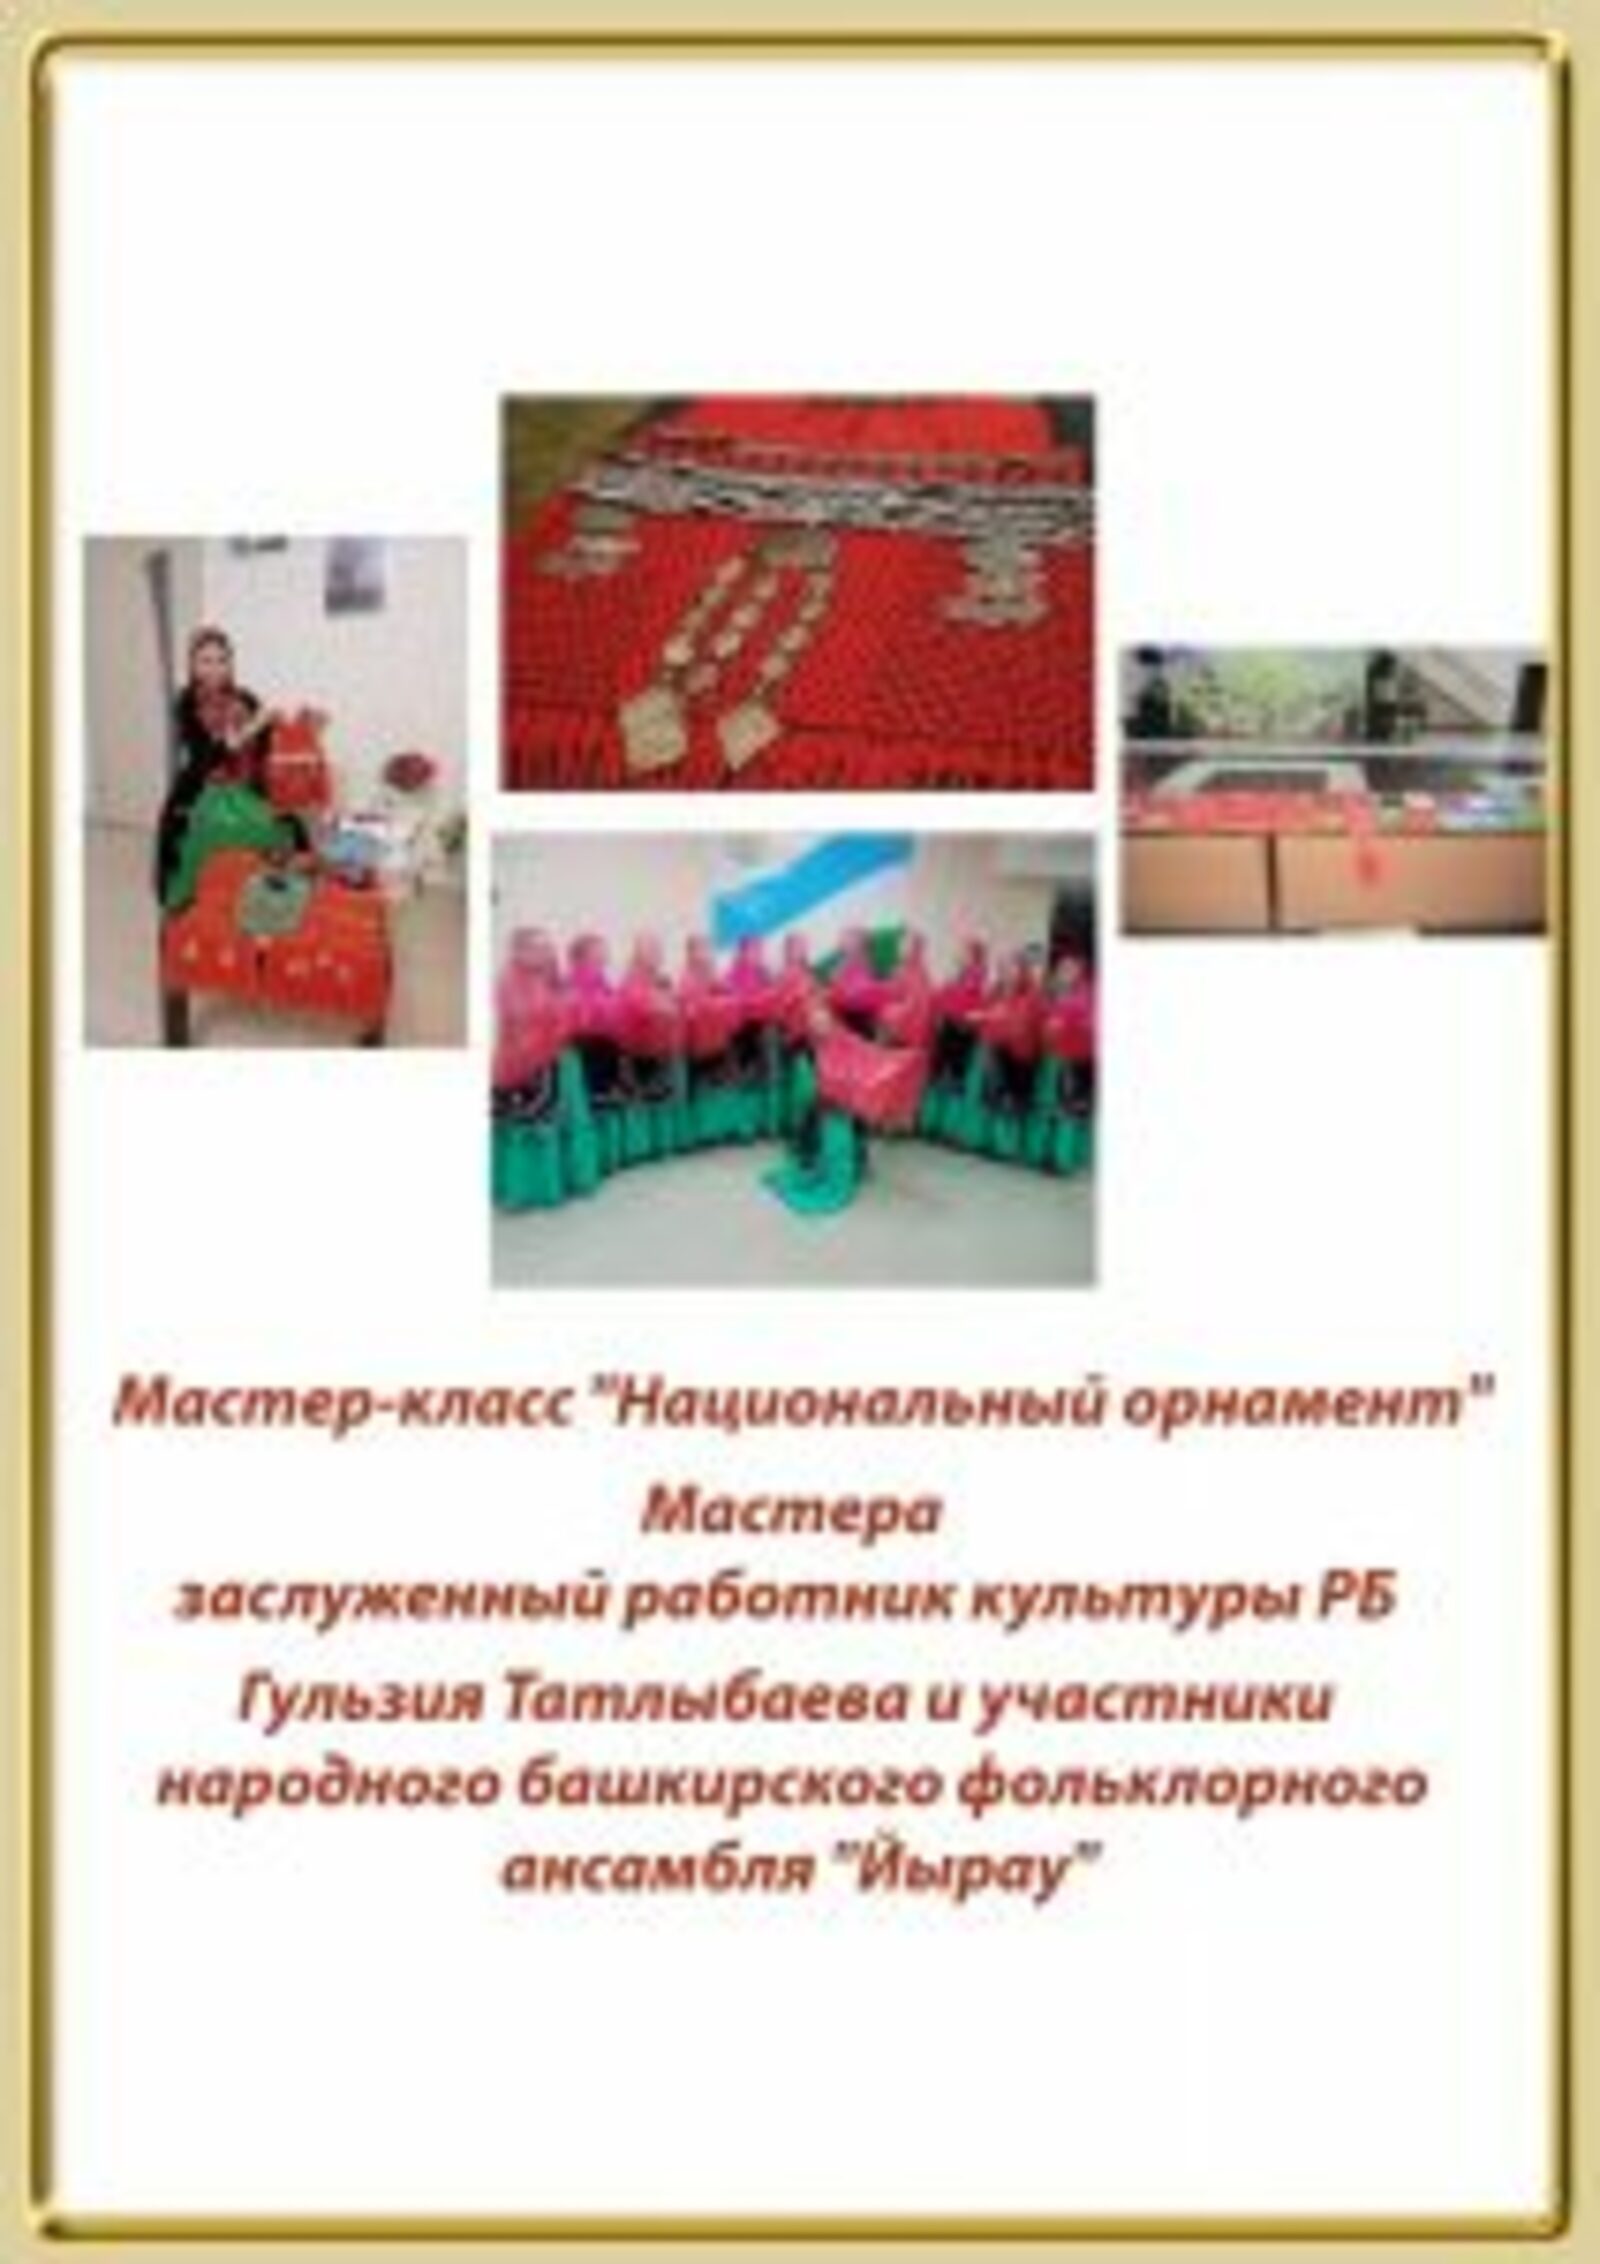 В Башкирии пройдет мастер-класс «Милли биҙәк-Национальный орнамент по изготовлению башкирских национальных украшений.